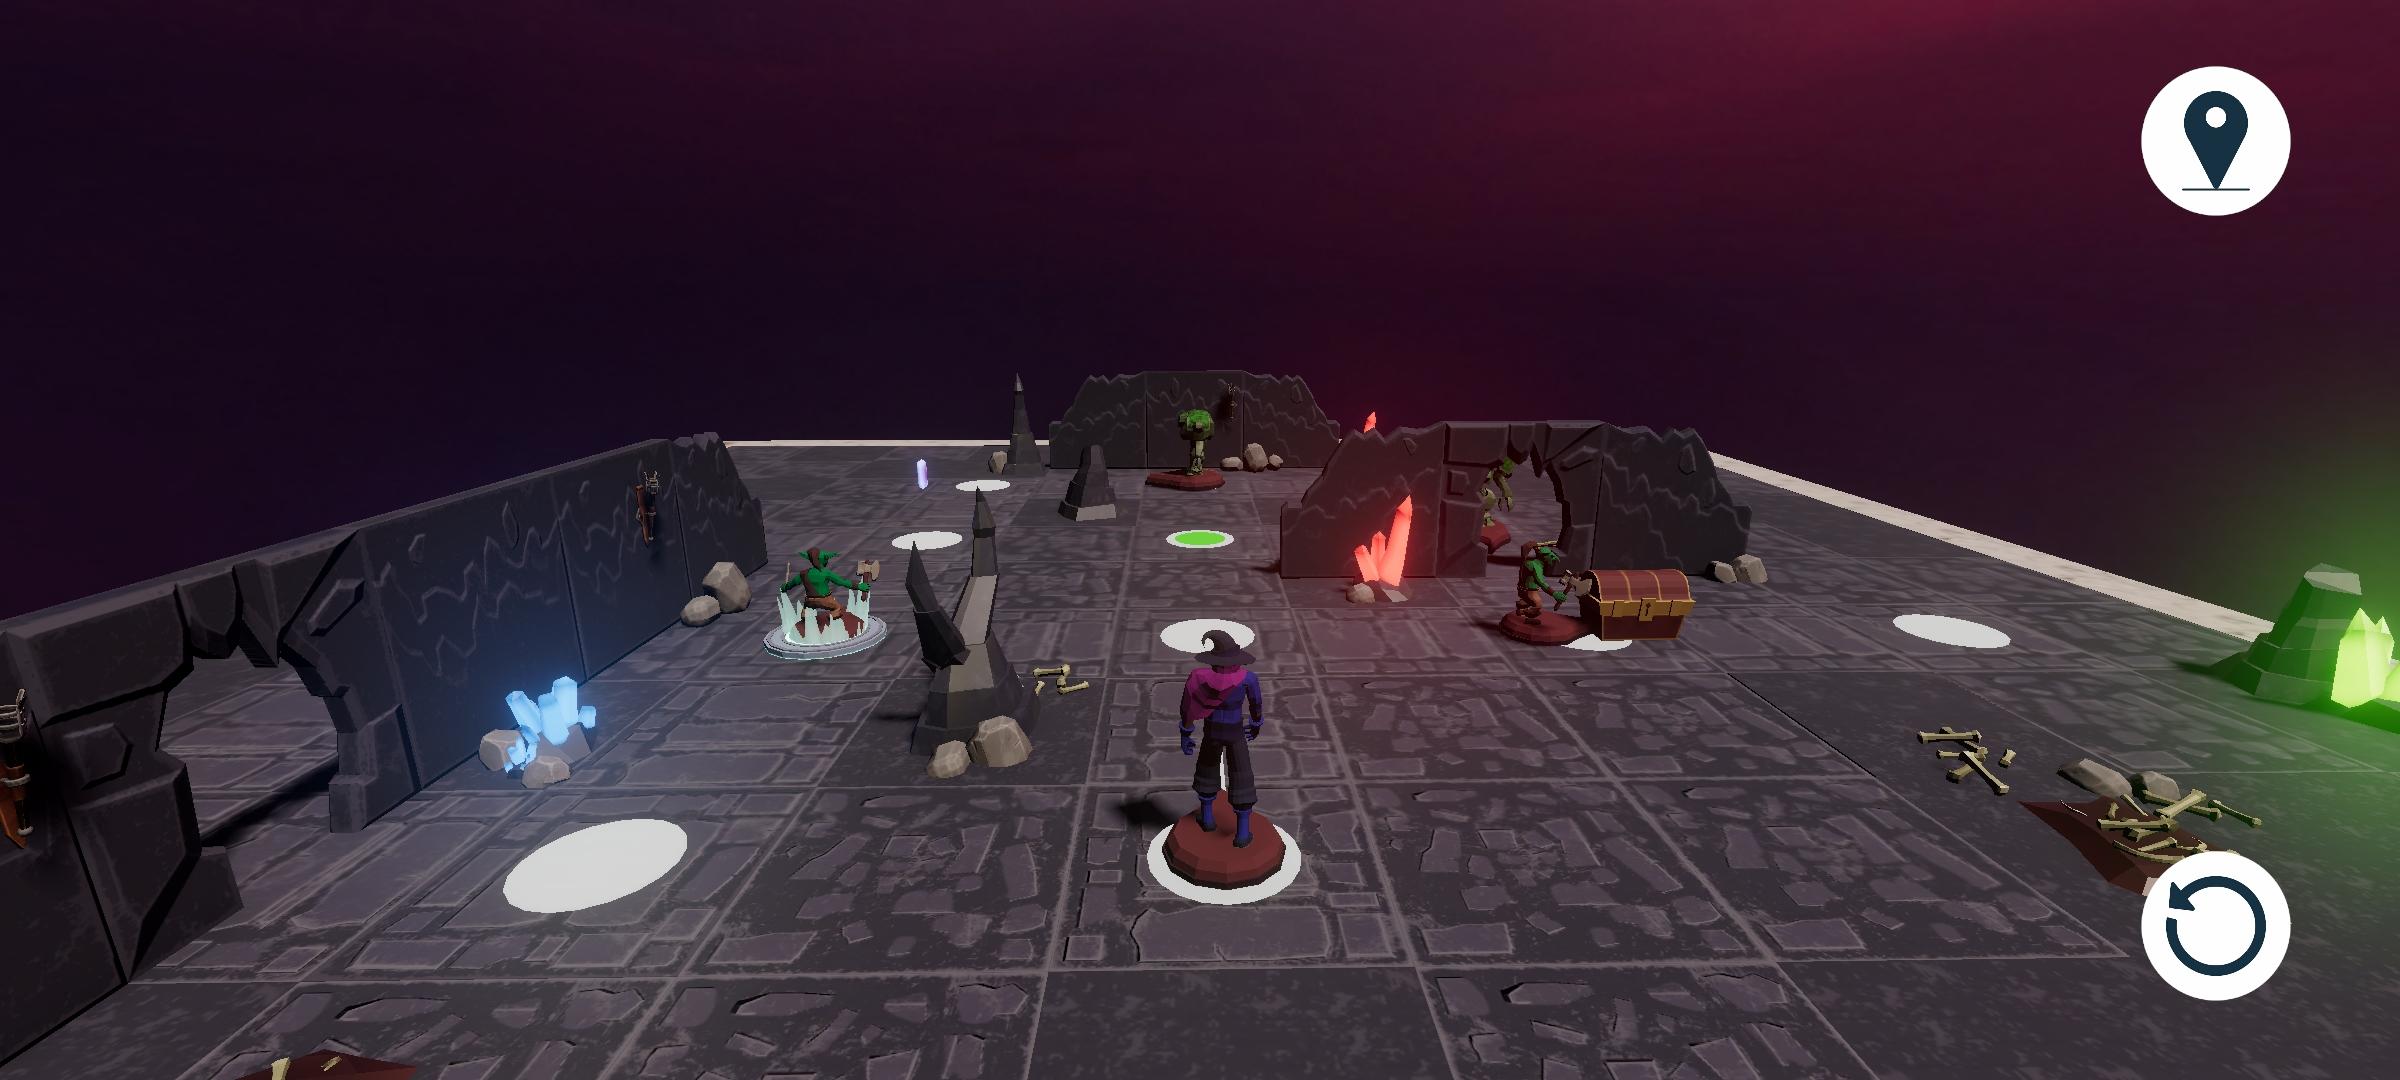 Board Mage GO screenshot game